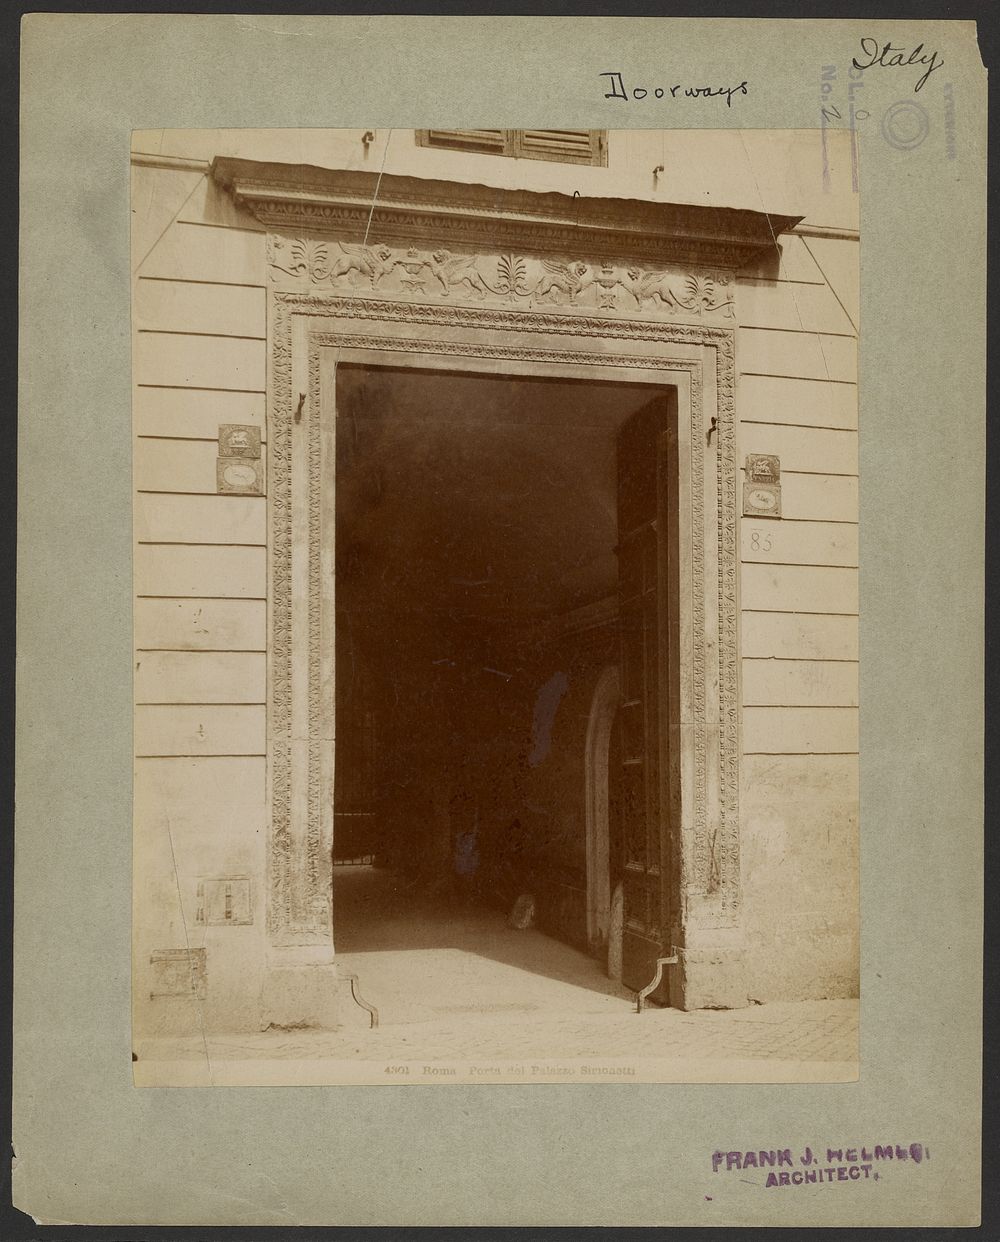 Roma, Porta del Palazzo Simonetti